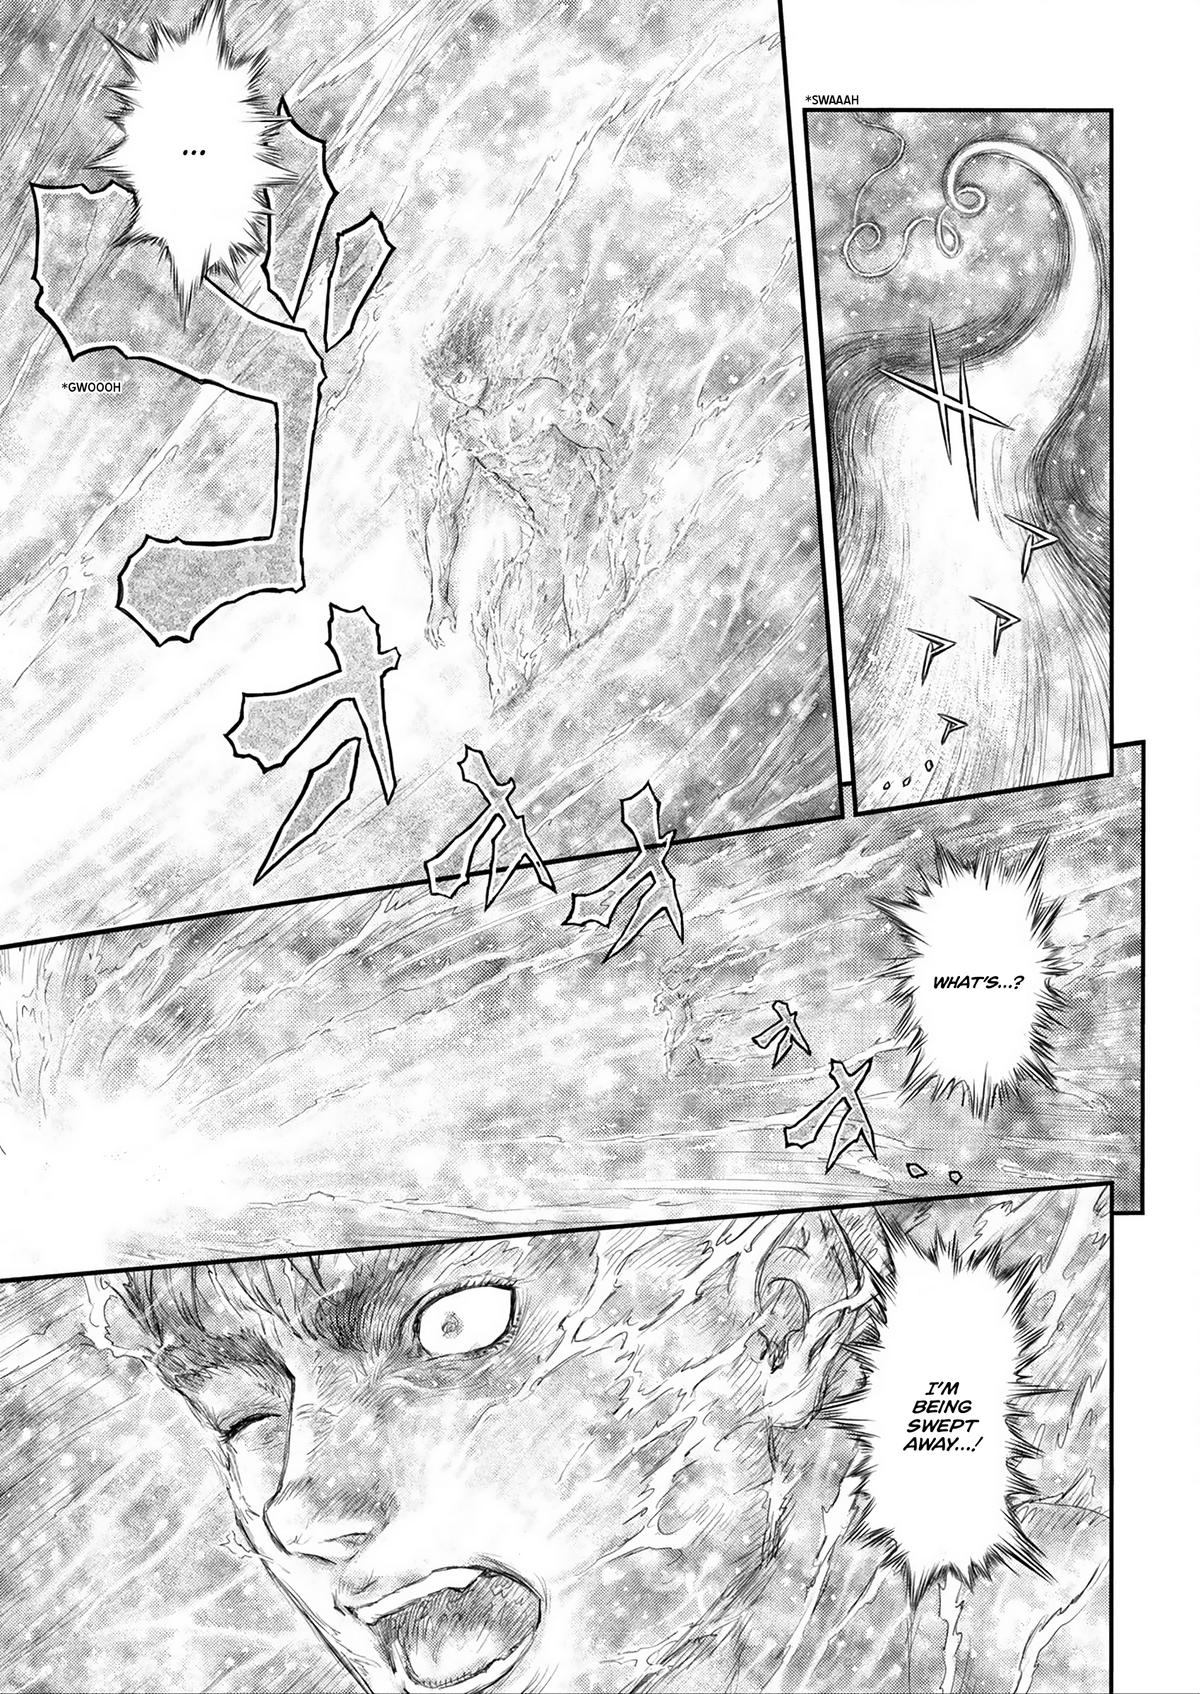 Berserk Manga Chapter 376 image 02